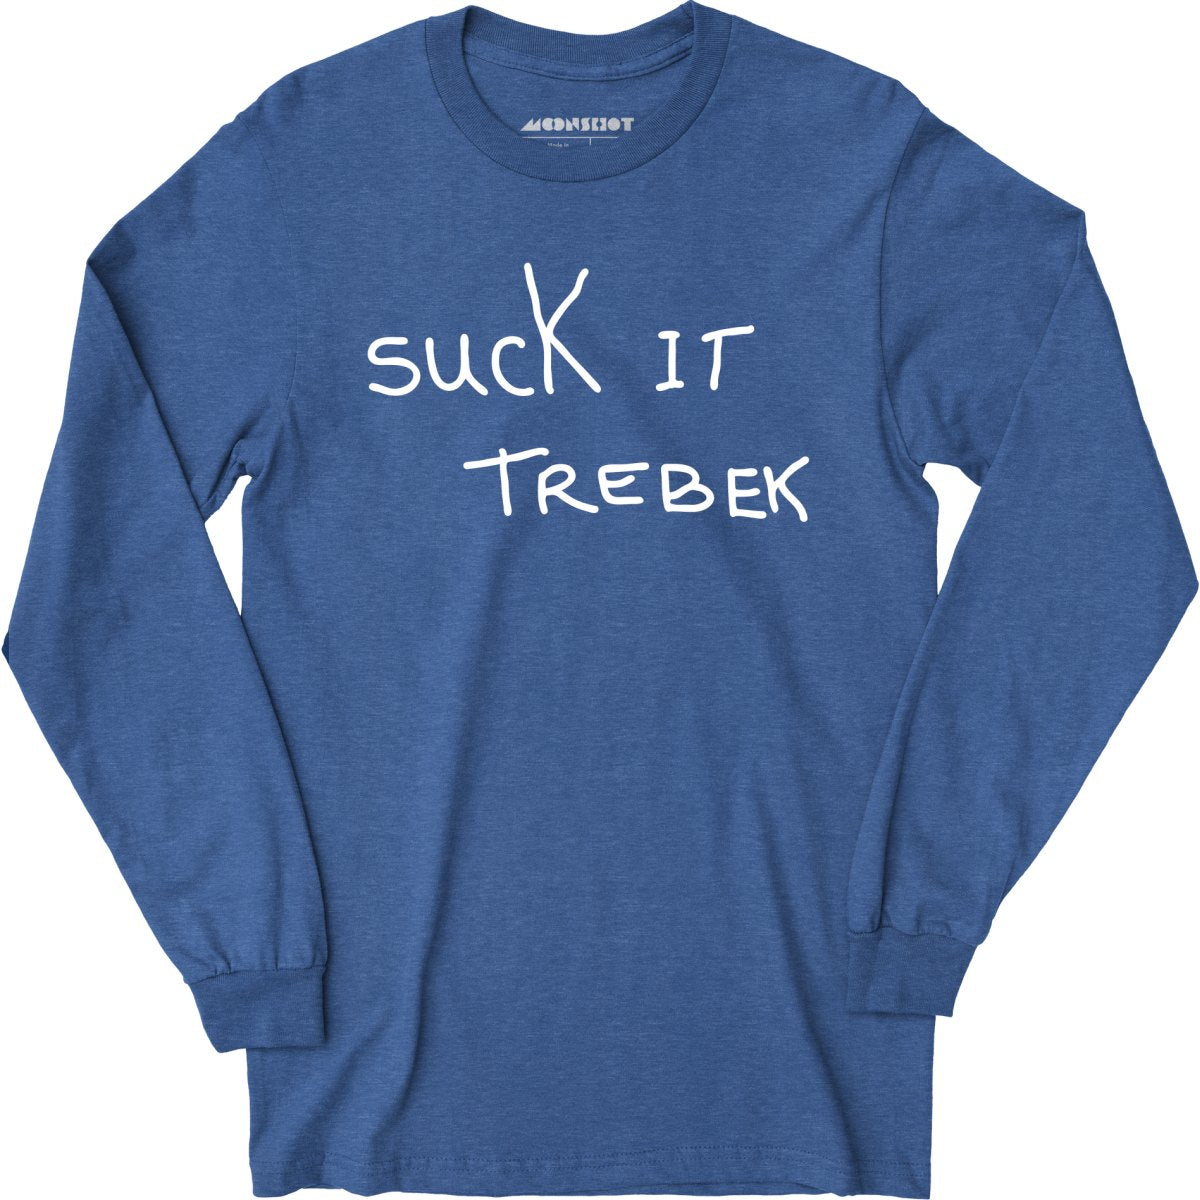 Suck it Trebek - Long Sleeve T-Shirt